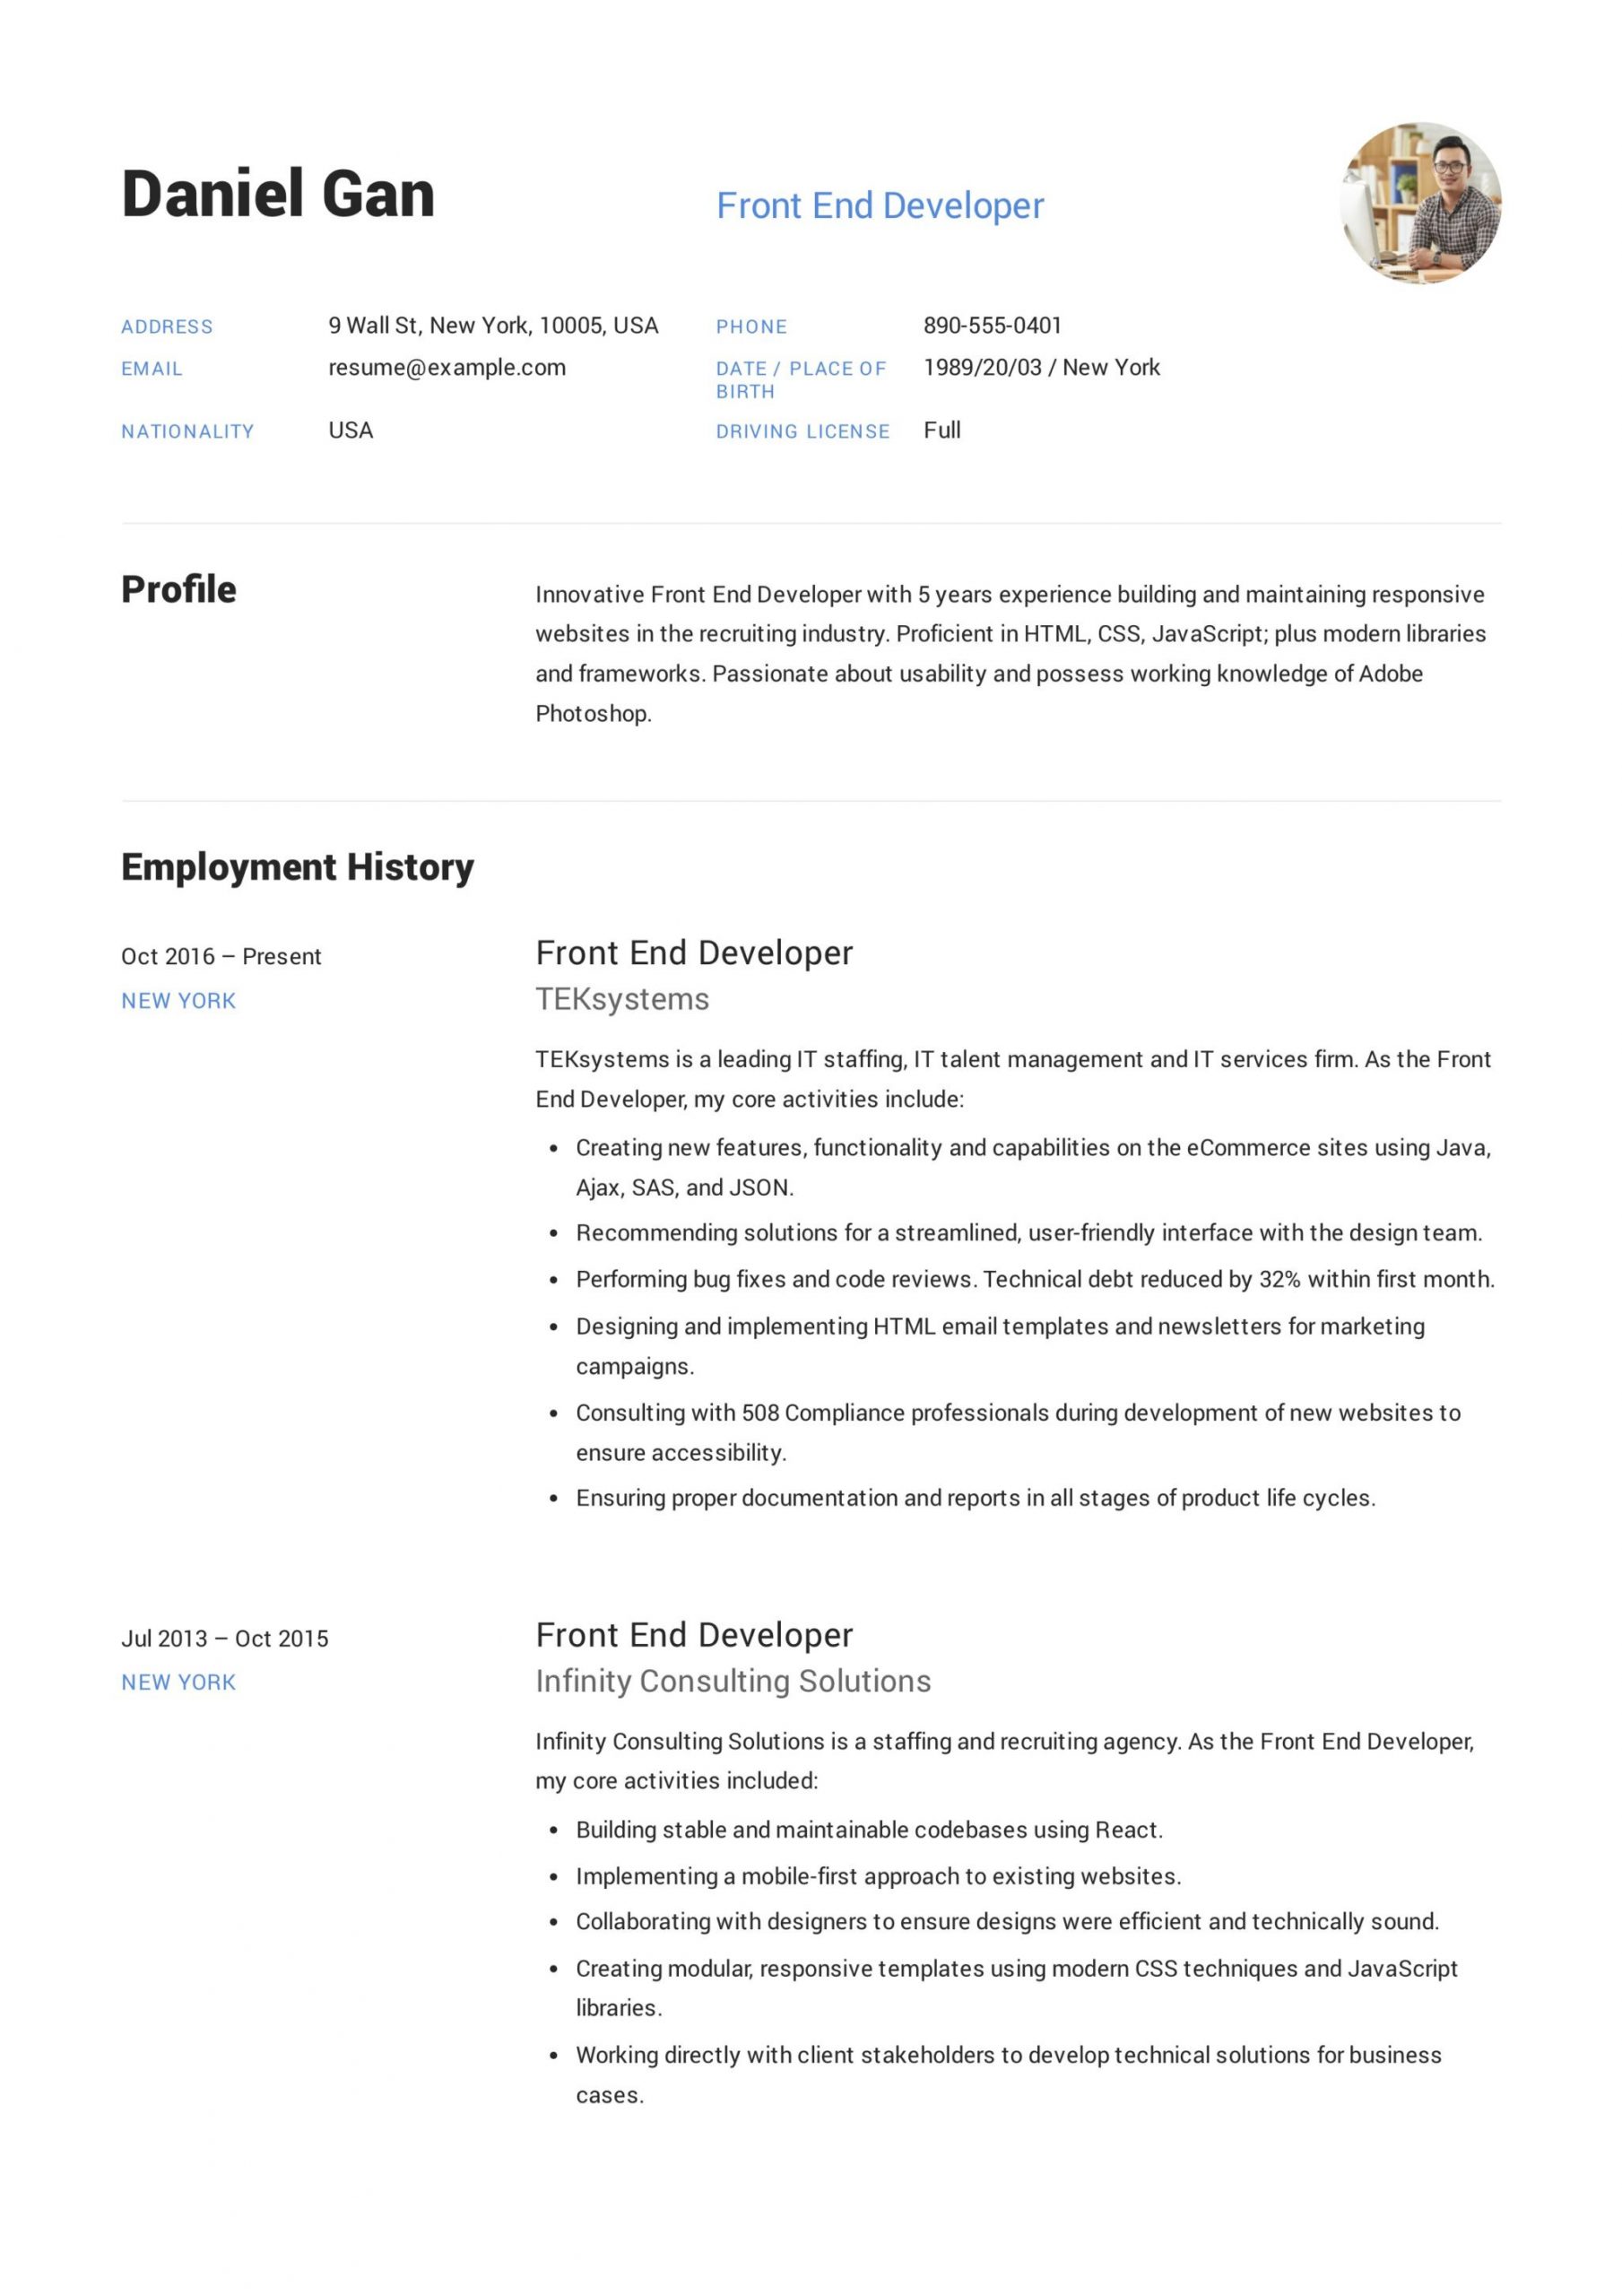 Sample Resume Front End Web Developer 17 Front-end Developer Resume Examples & Guide Pdf 2020